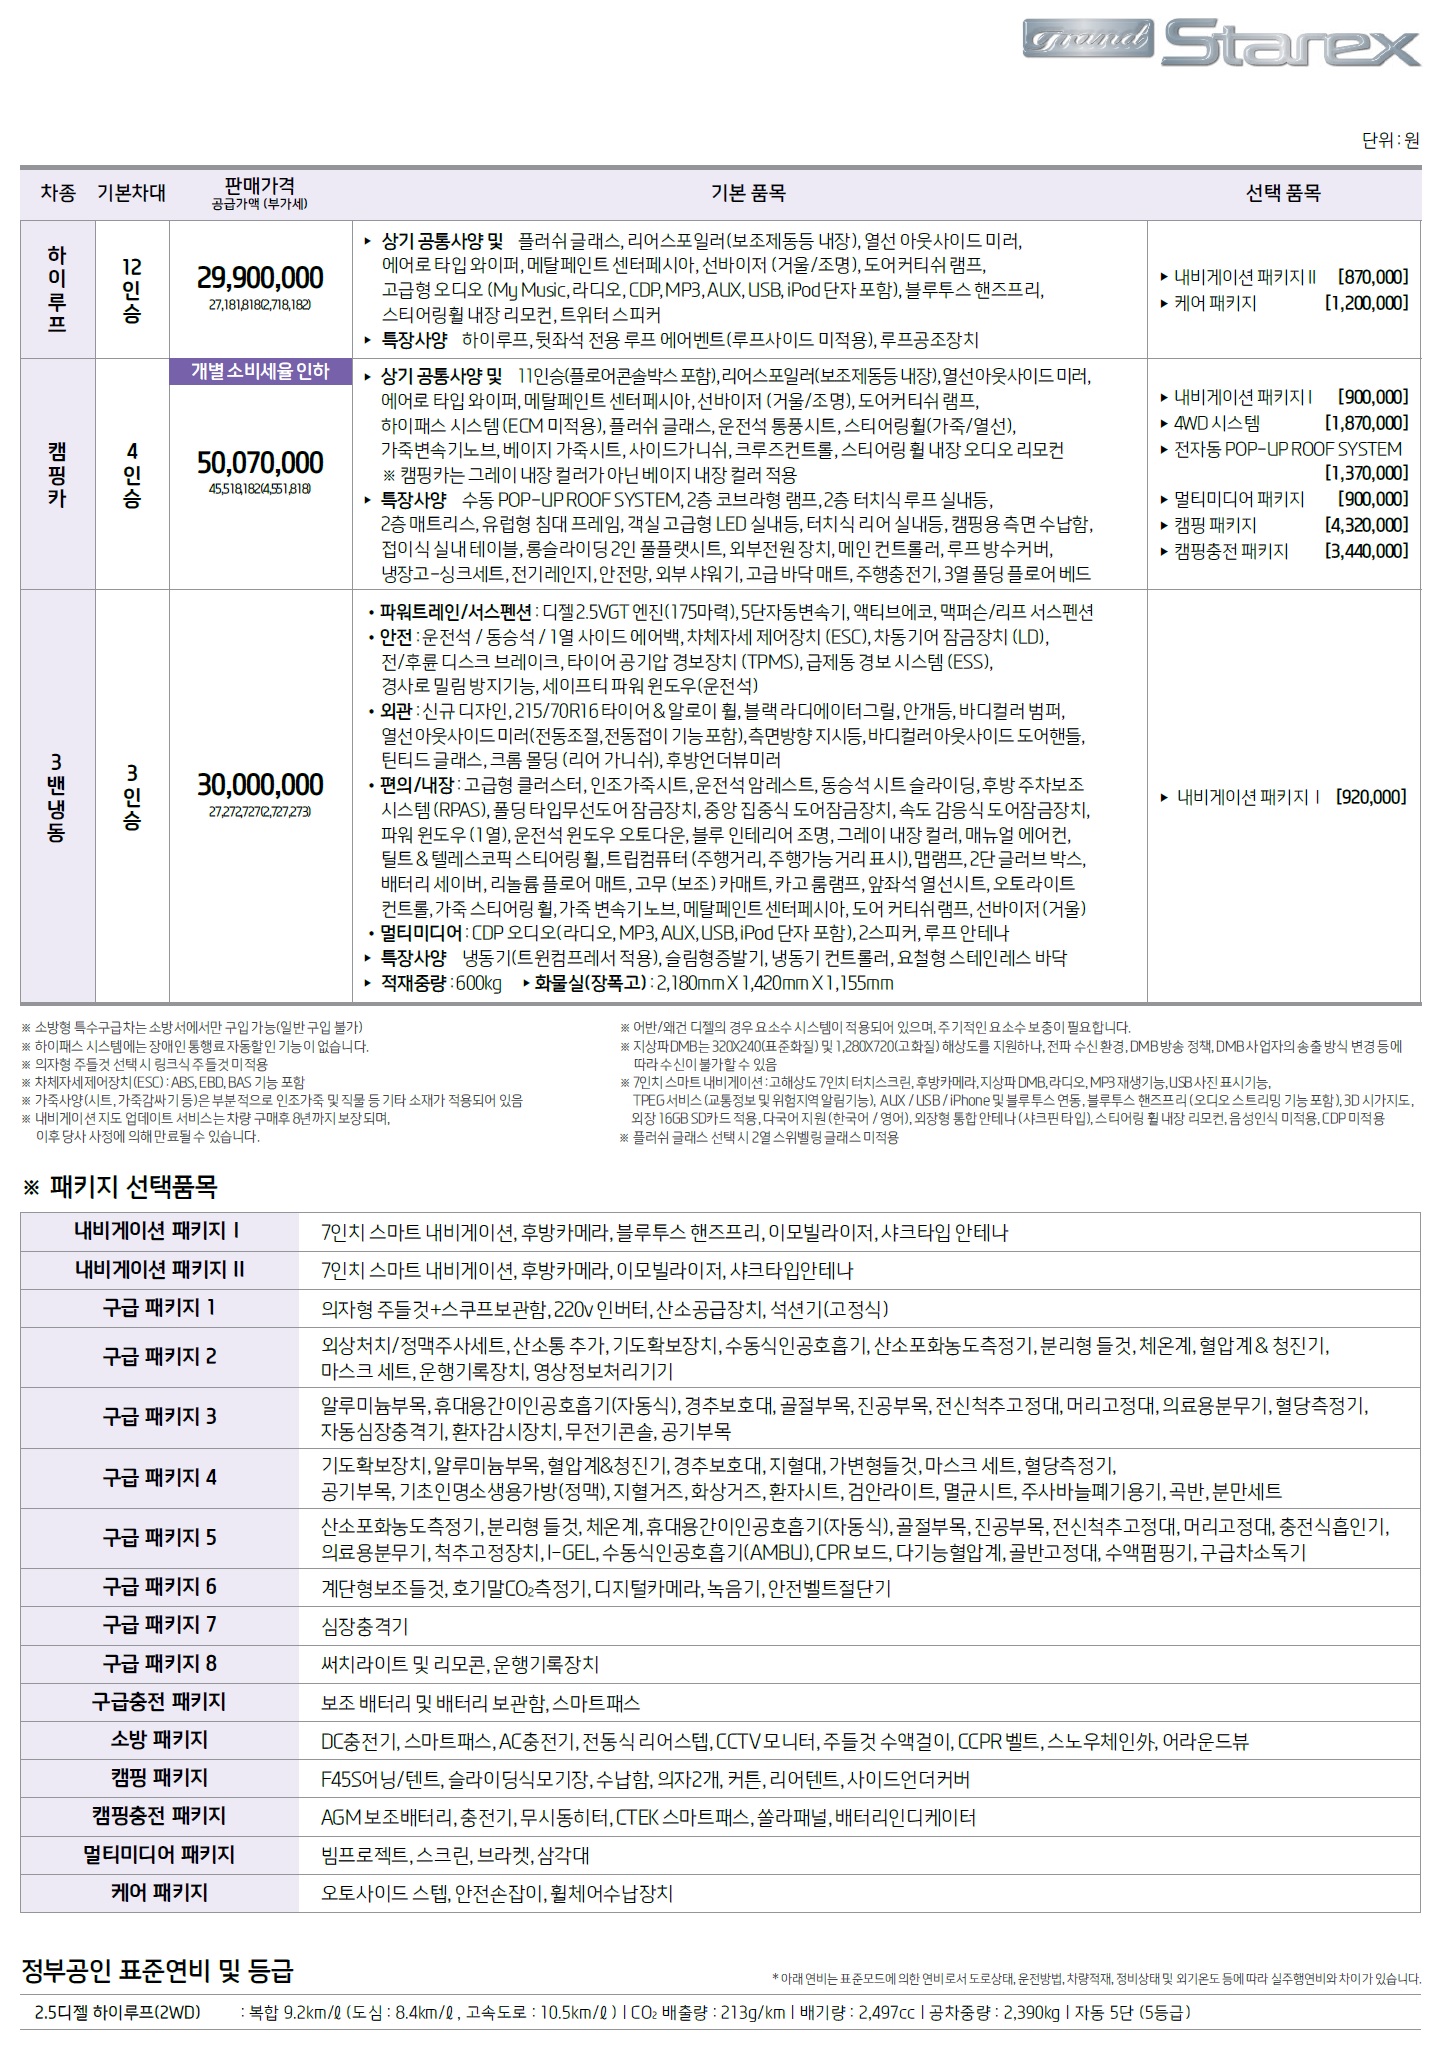 그랜드스타렉스 특장차 가격표 - 2019년 04월 -2.jpg